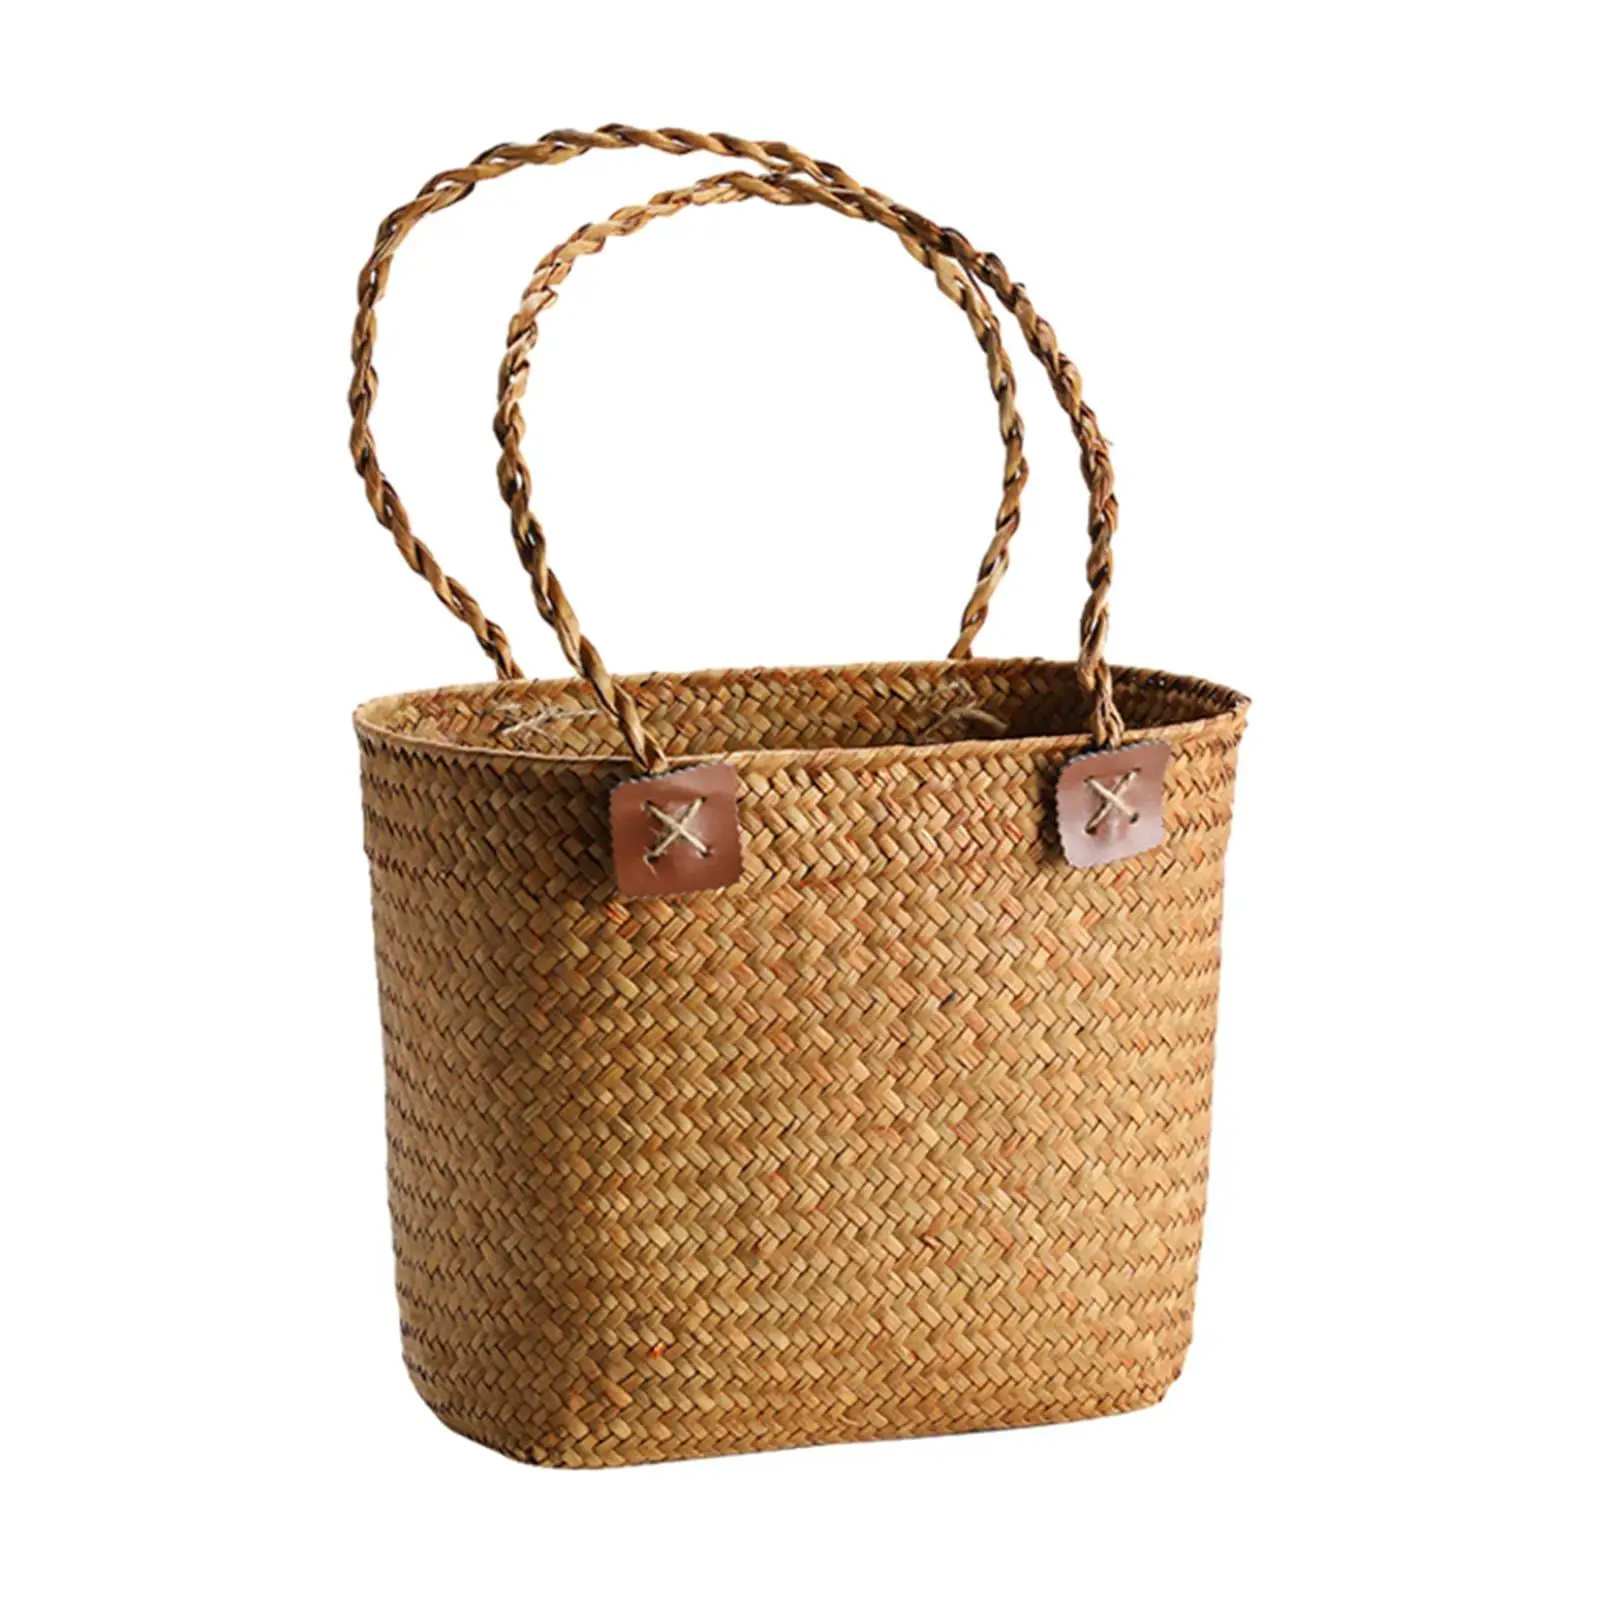 Handwoven Storage Basket Portable Camping Beach Lightweight Bread Storage Basket